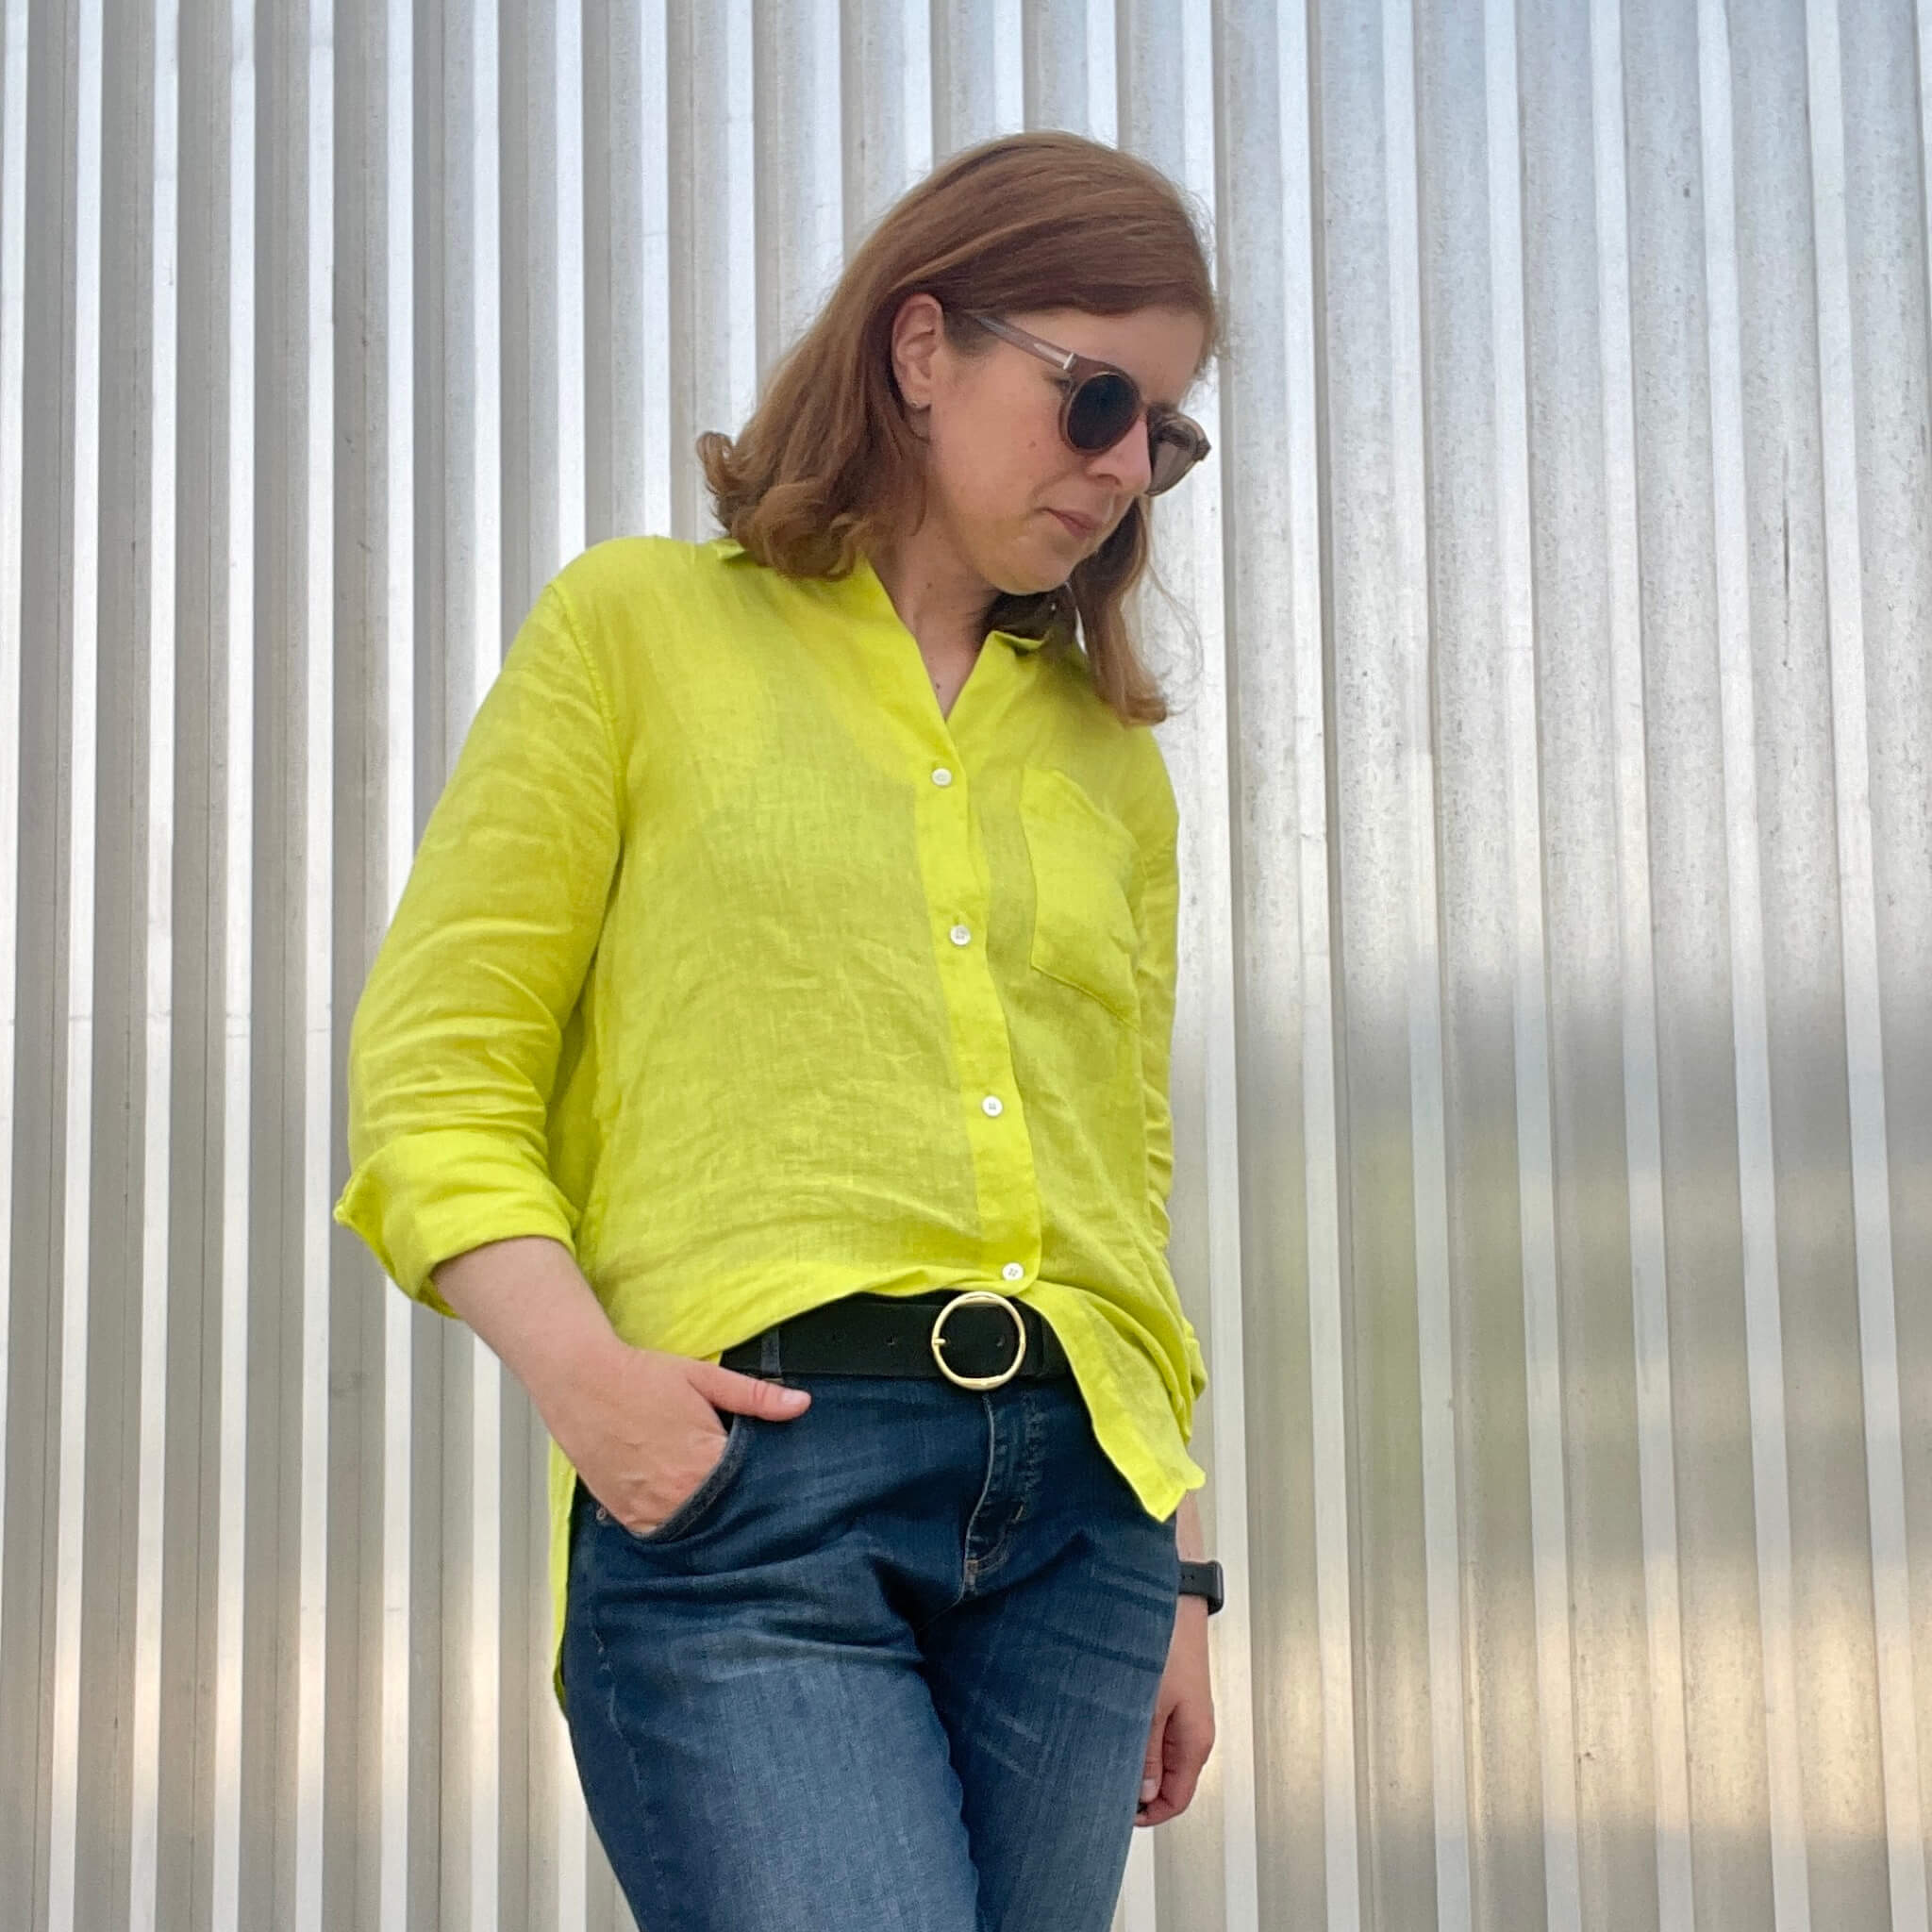 Gelb Mode kombinieren Jeans Boyfriend cut denim Sommerfarben